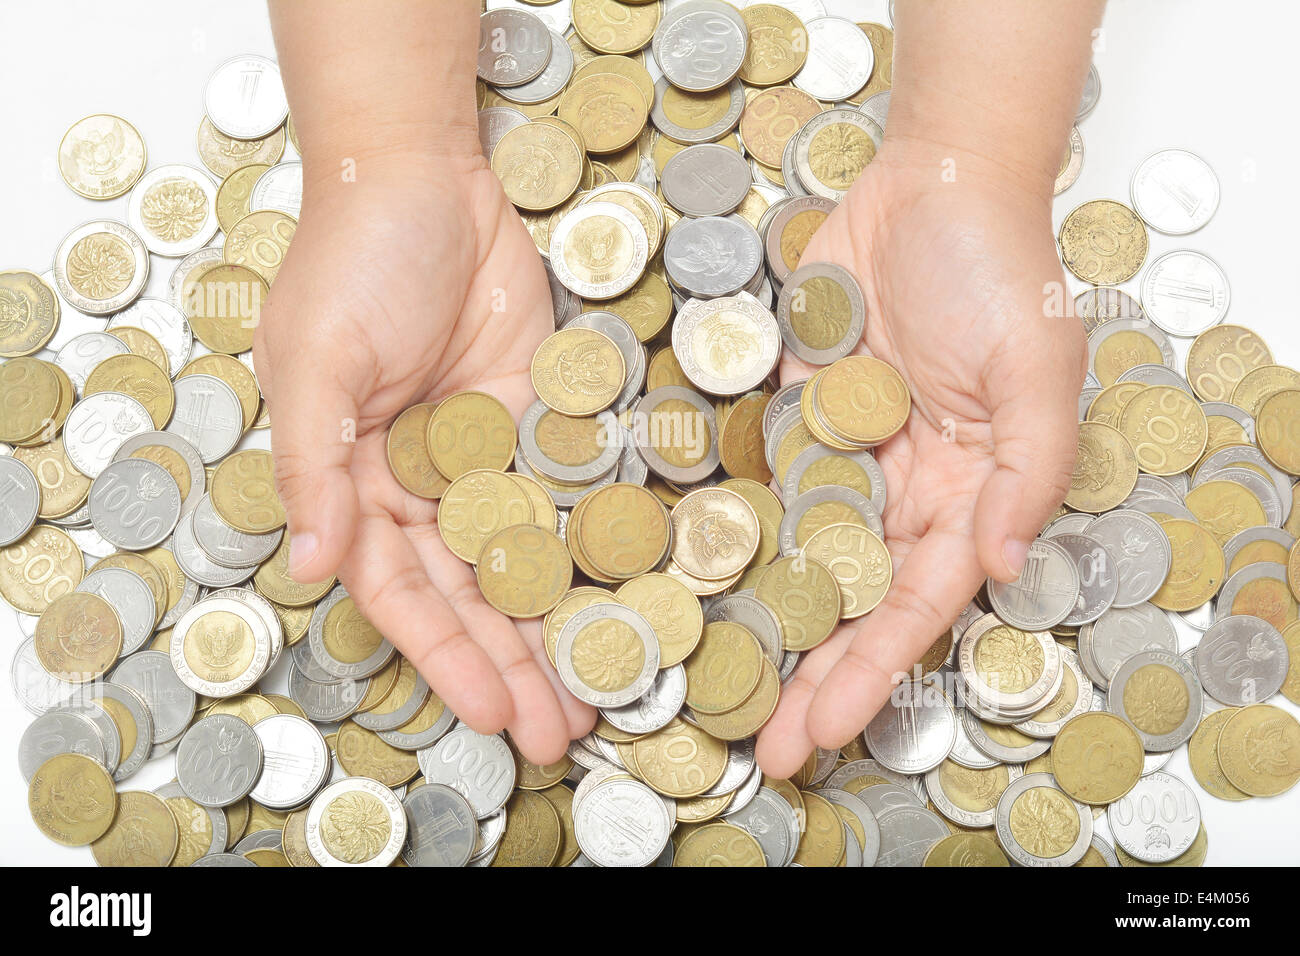 Il gesto a mano per raccogliendo monete dalla pila. Foto Stock